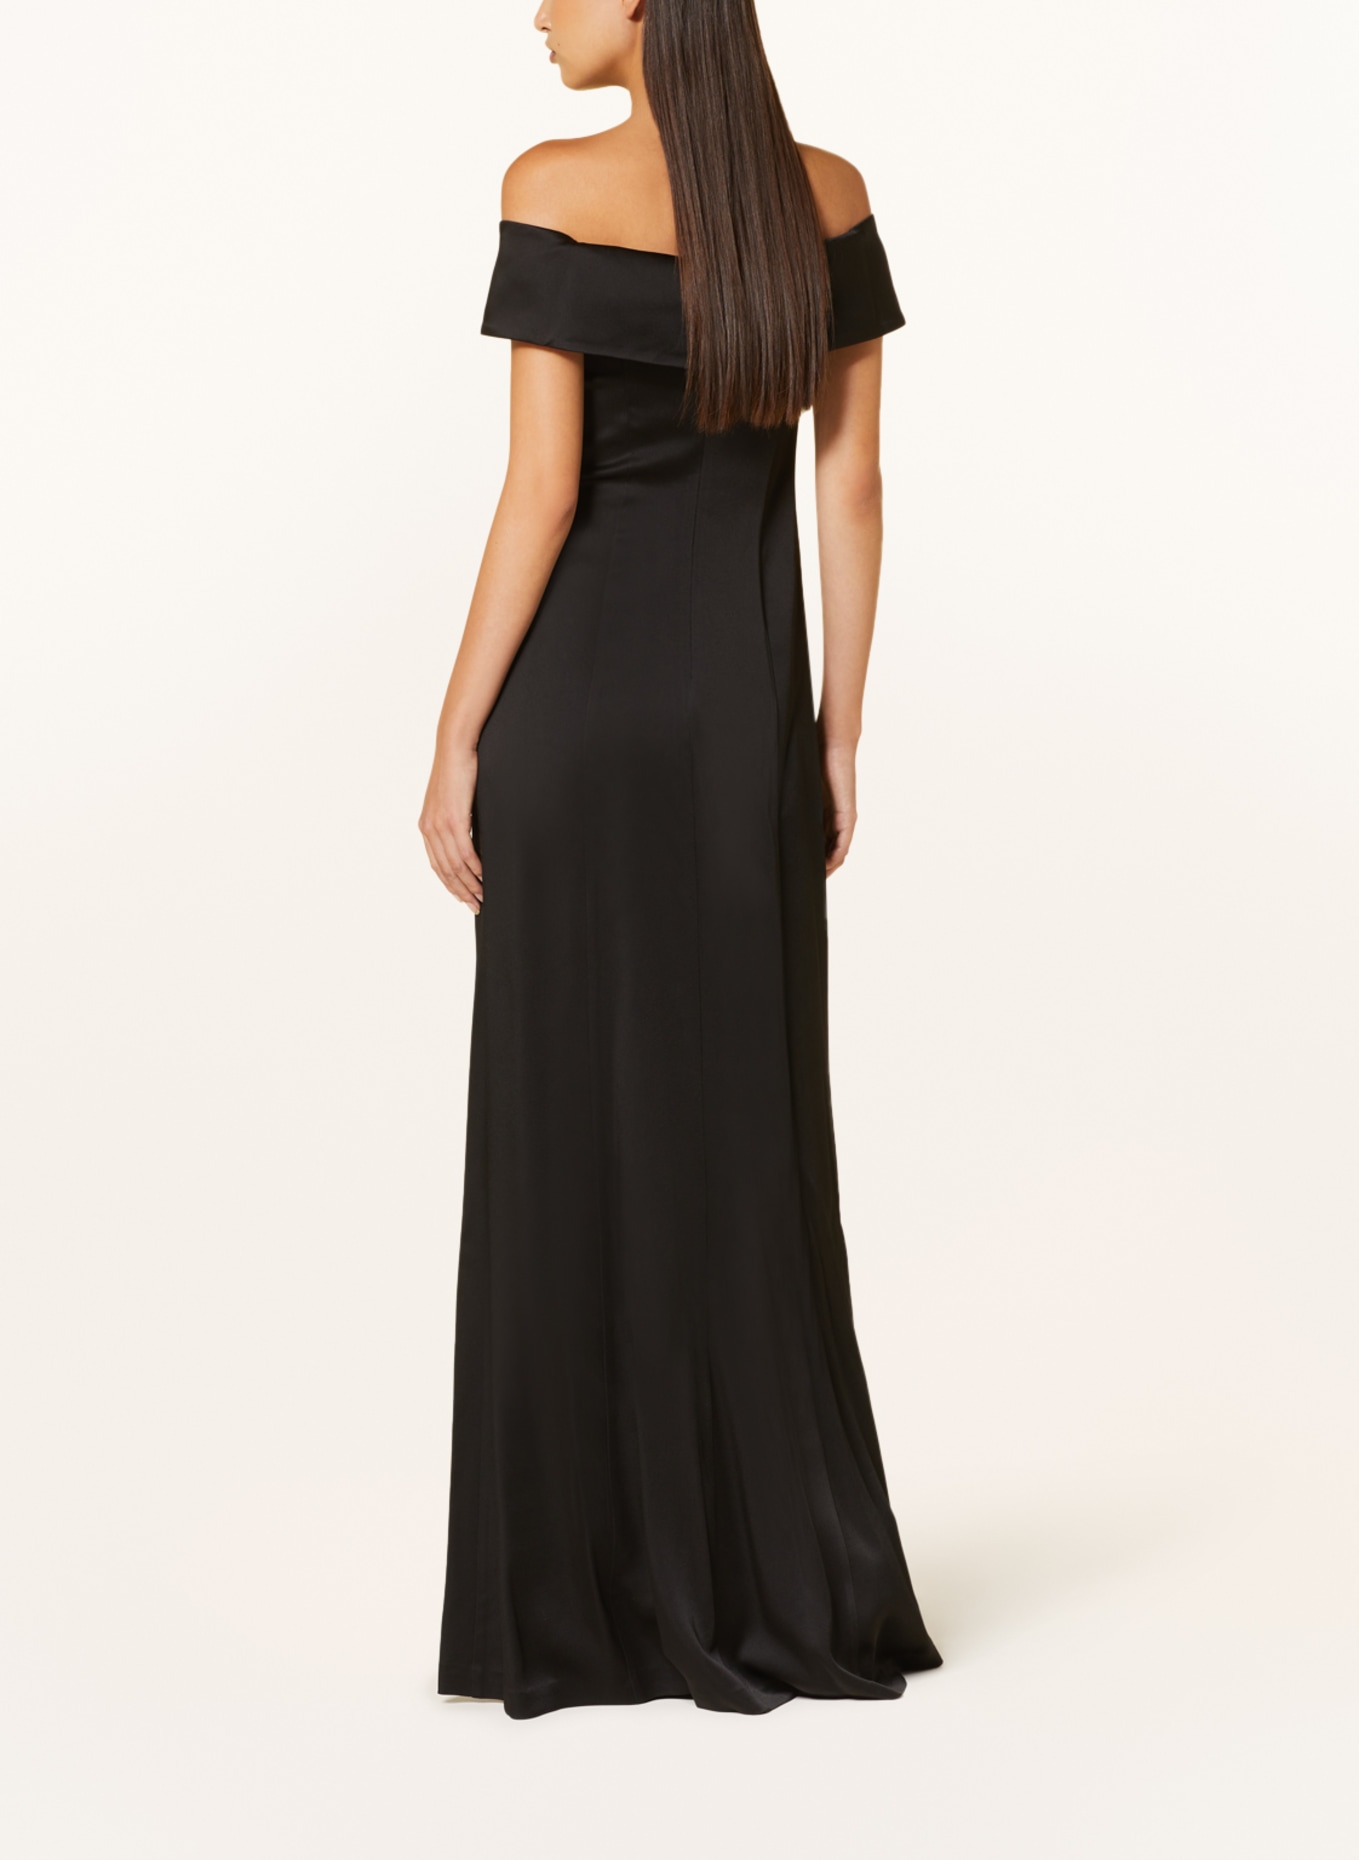 IVY OAK Evening dress NADELLE in satin, Color: BLACK (Image 3)